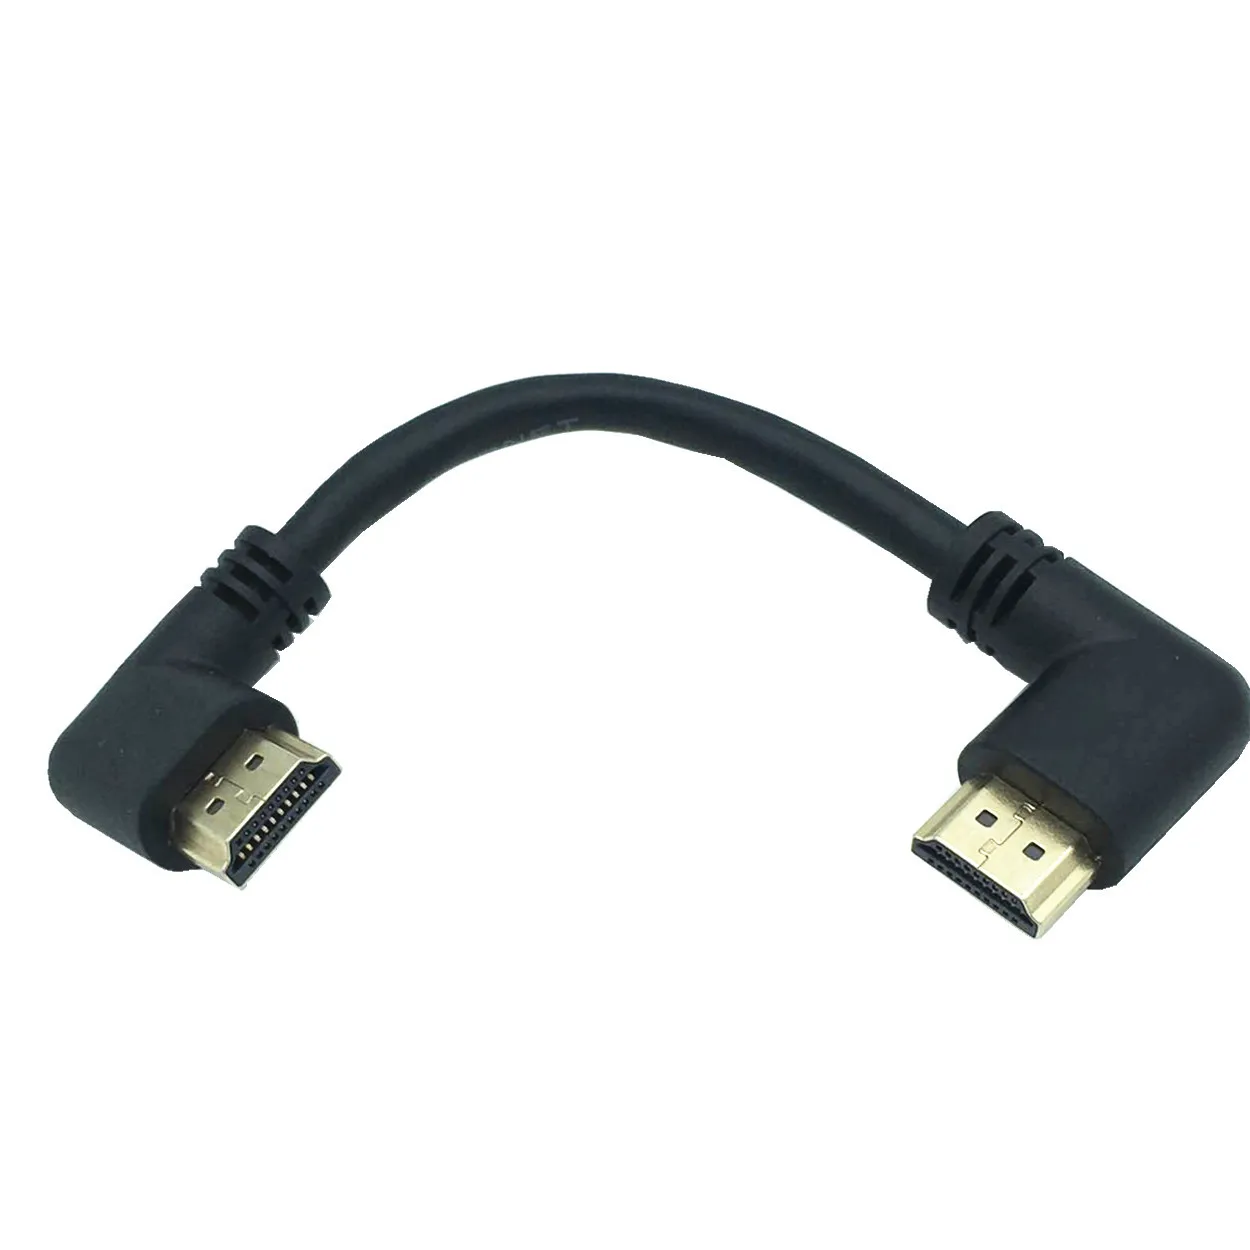 La stânga sau la Dreapta în Unghi compatibil HDMI de sex Masculin la Dreapta la Stânga Cot de sex Masculin Cablu de extensie 15cm 1m 50cm, 2.0 V unghi cablu 4K*2K @60HZ 0